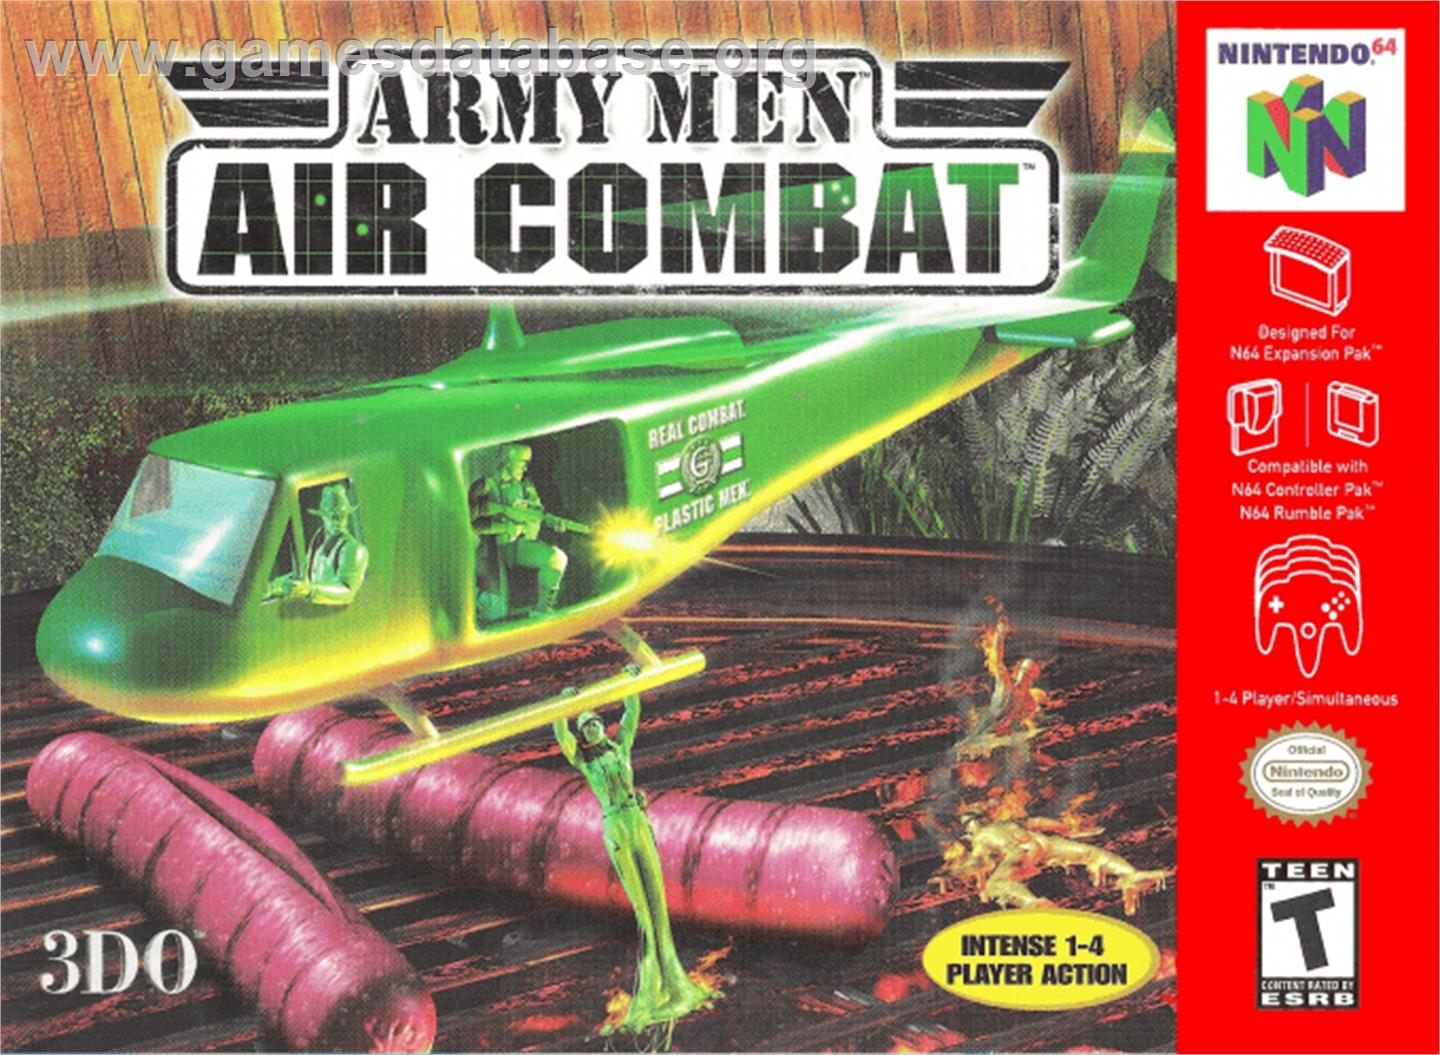 Army Men: Air Combat - Nintendo N64 - Artwork - Box